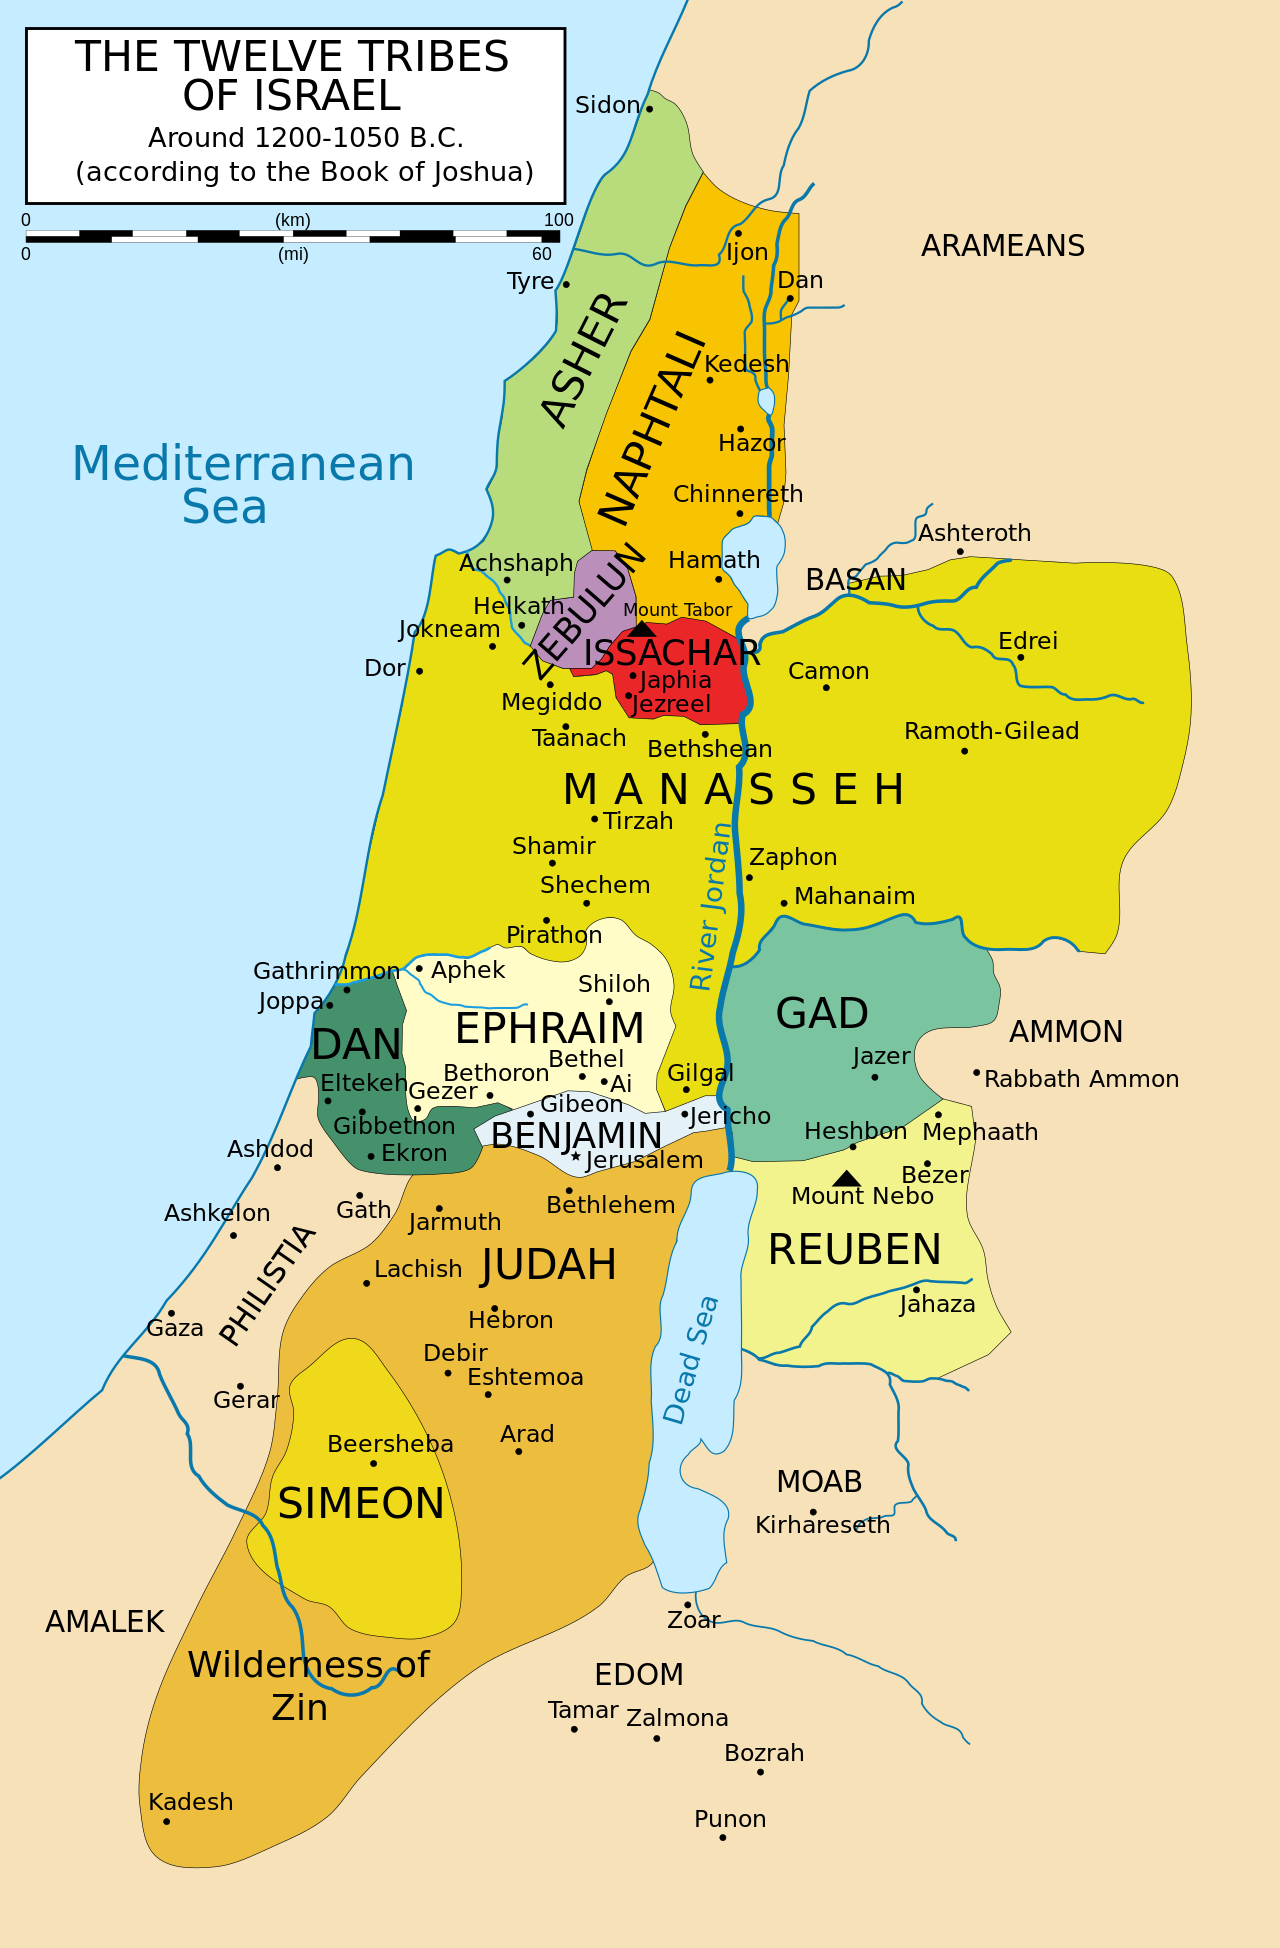 Harta e dymbëdhjetë fiseve të Izraelit sipas Librit të Jozueut